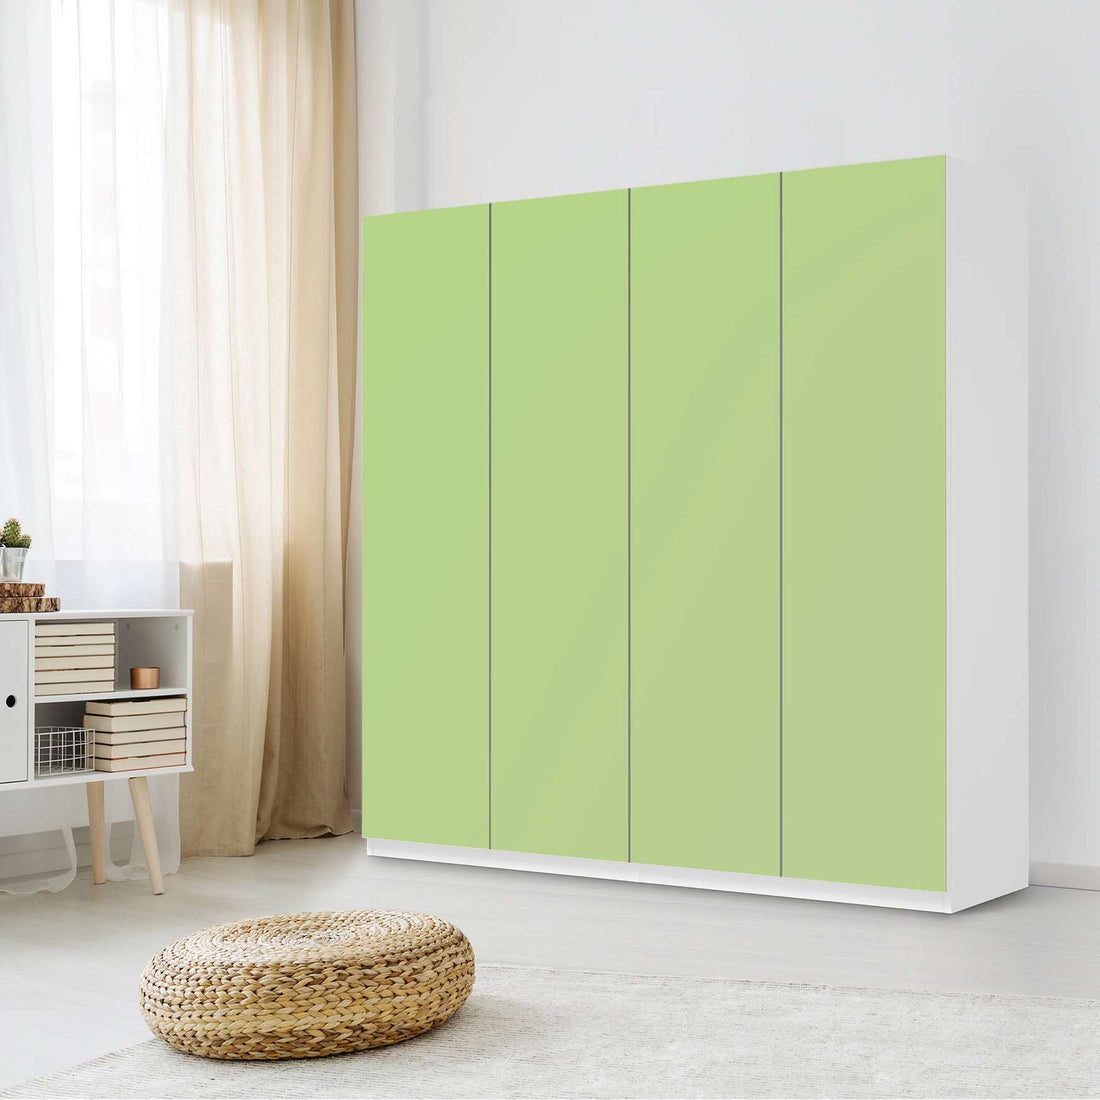 Klebefolie für Schränke Hellgrün Light - IKEA Pax Schrank 201 cm Höhe - 4 Türen - Schlafzimmer